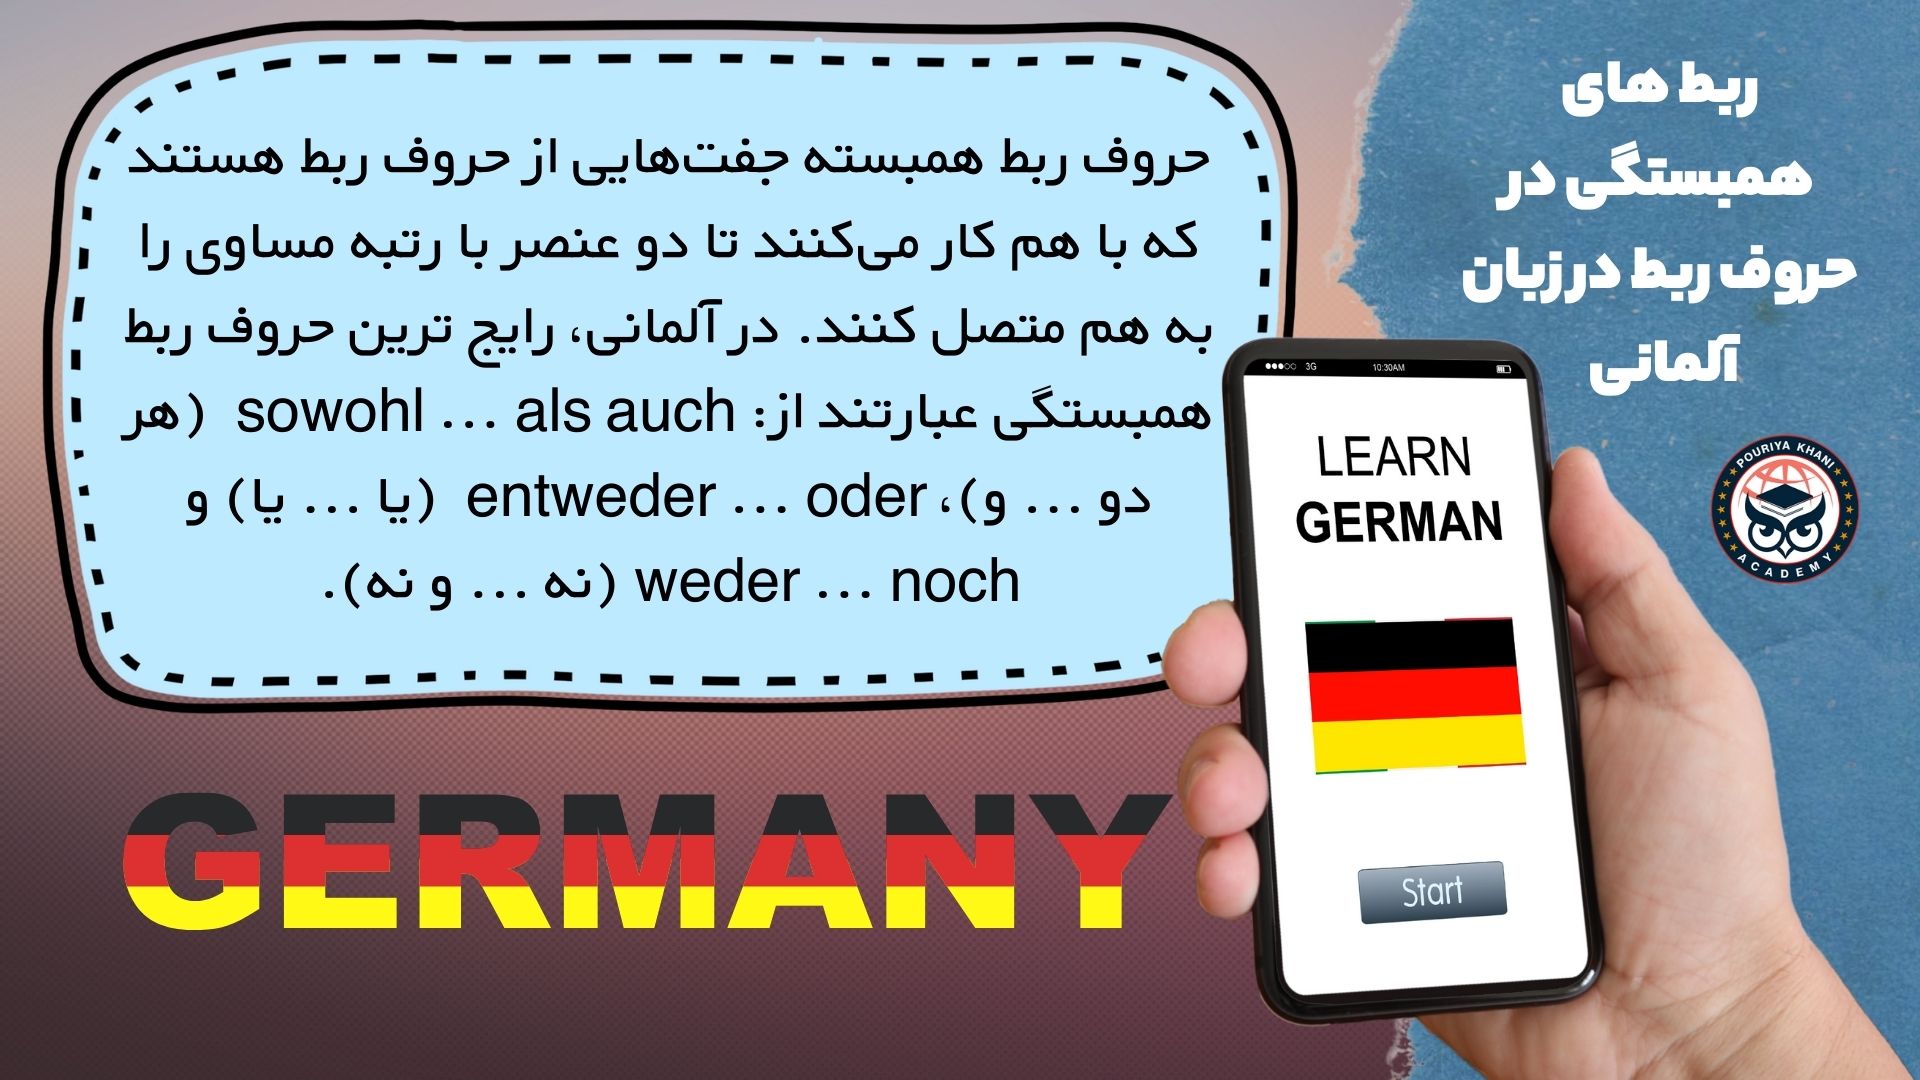 ربط های همبستگی در حروف ربط در زبان آلمانی